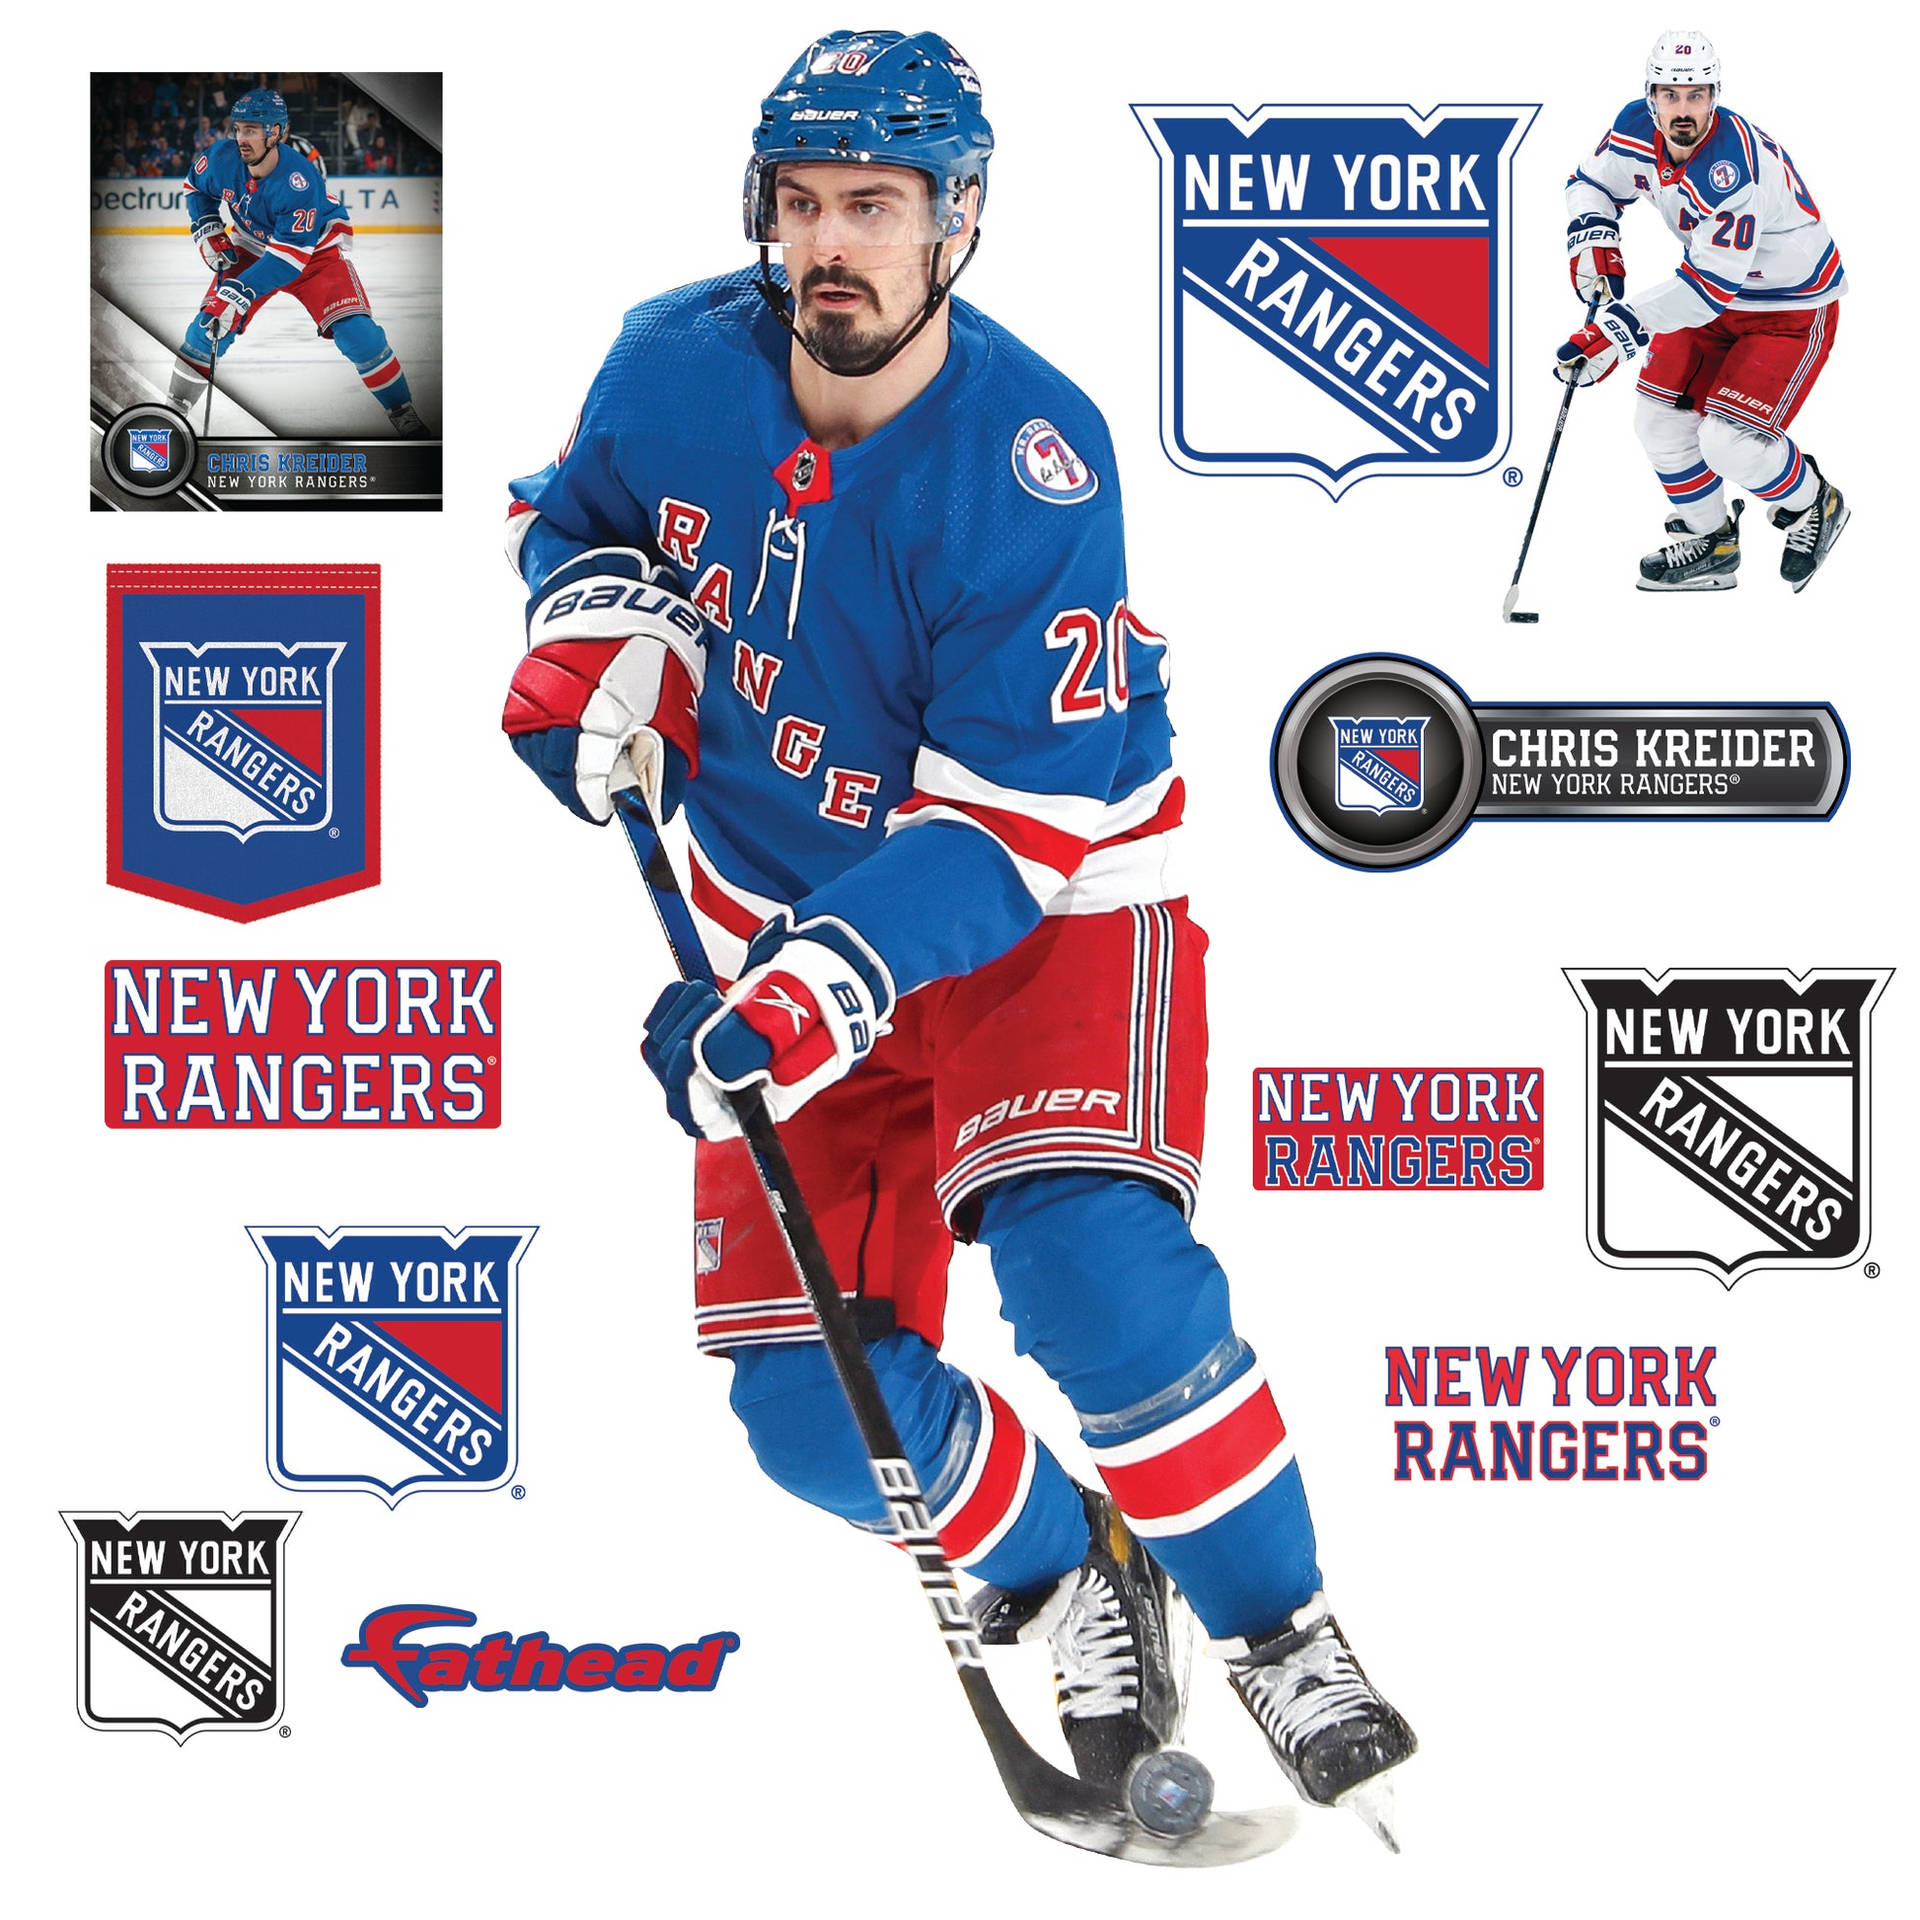 Chris Kreider New York Rangers Badge Wallpaper